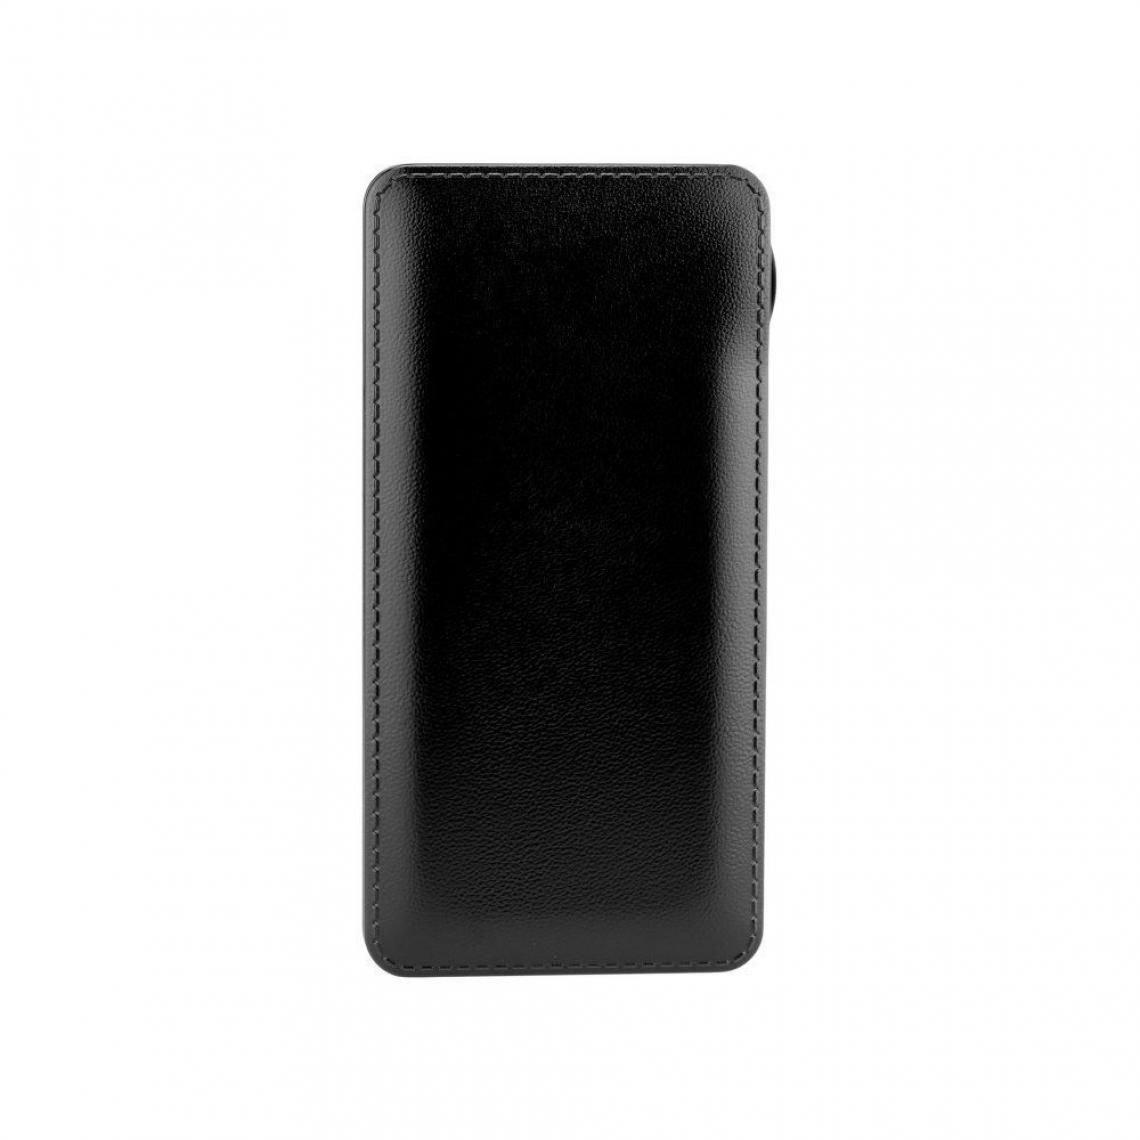 Ozzzo - Chargeur batterie externe 20000 mAh powerbank ozzzo noir pour Logicom M bot Tab 70 Pack Gaming - Autres accessoires smartphone